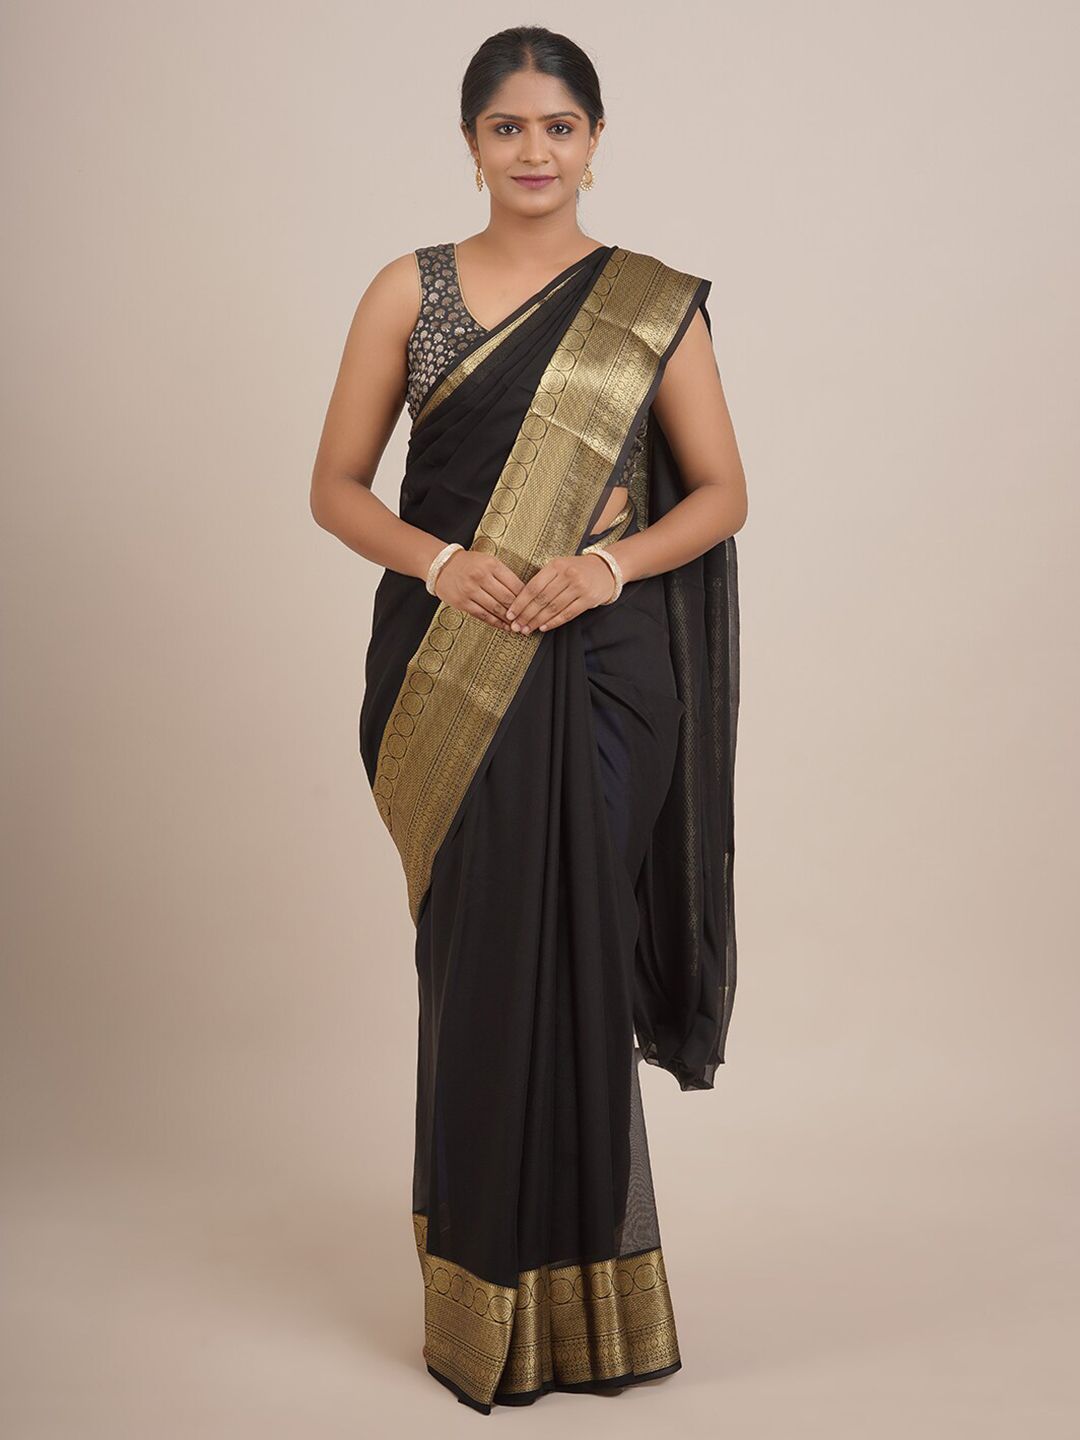 Pothys Black & Gold-Toned Zari Pure Georgette Saree Price in India